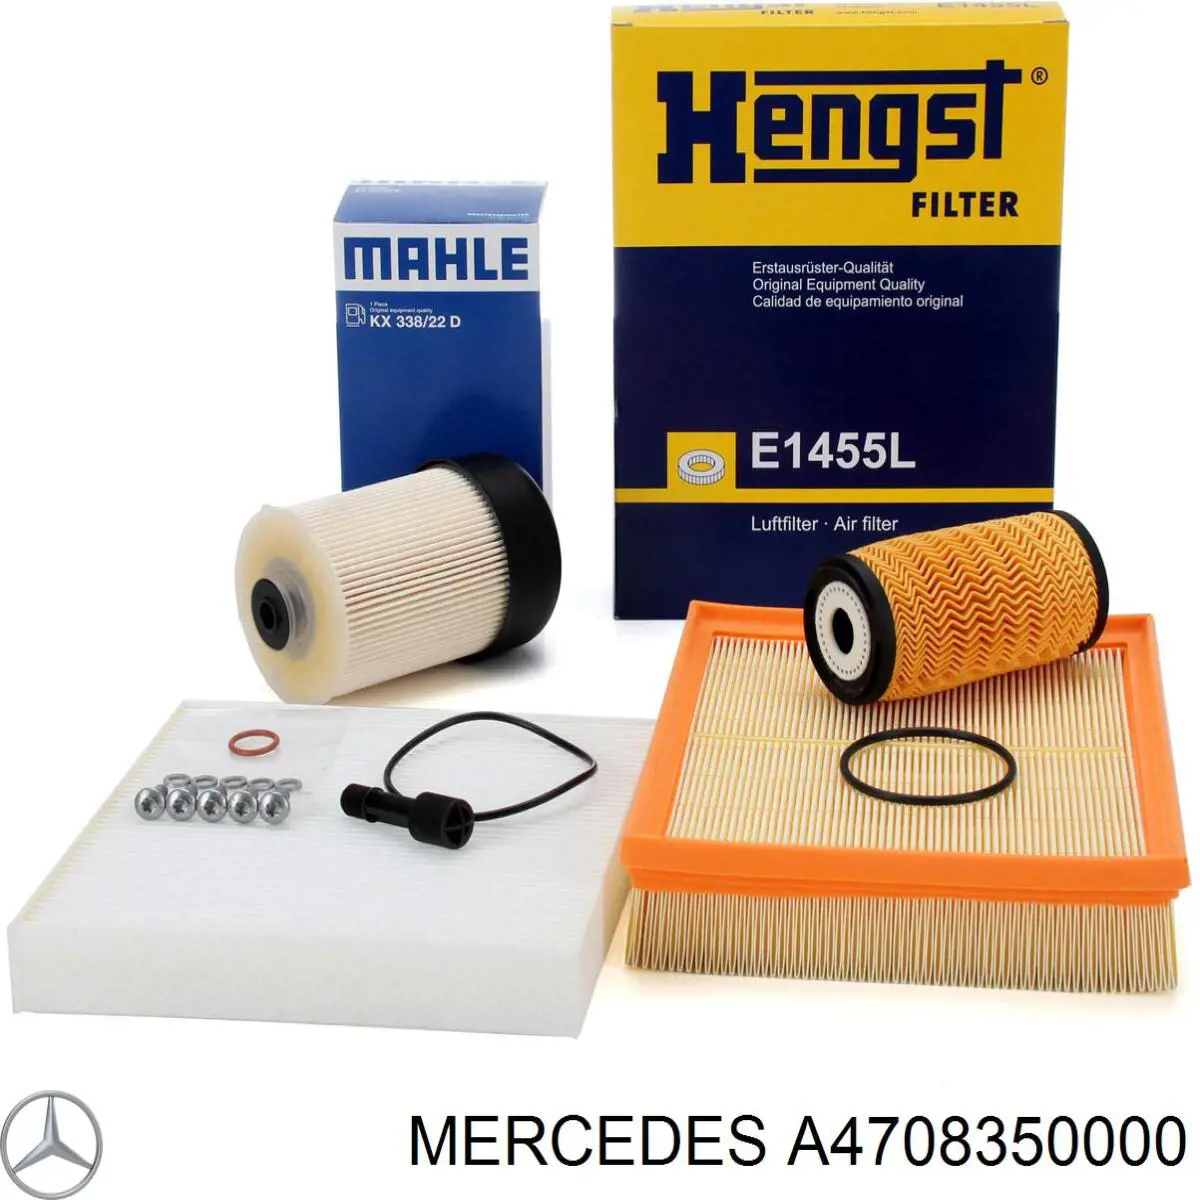 A4708350000 Mercedes filtro habitáculo